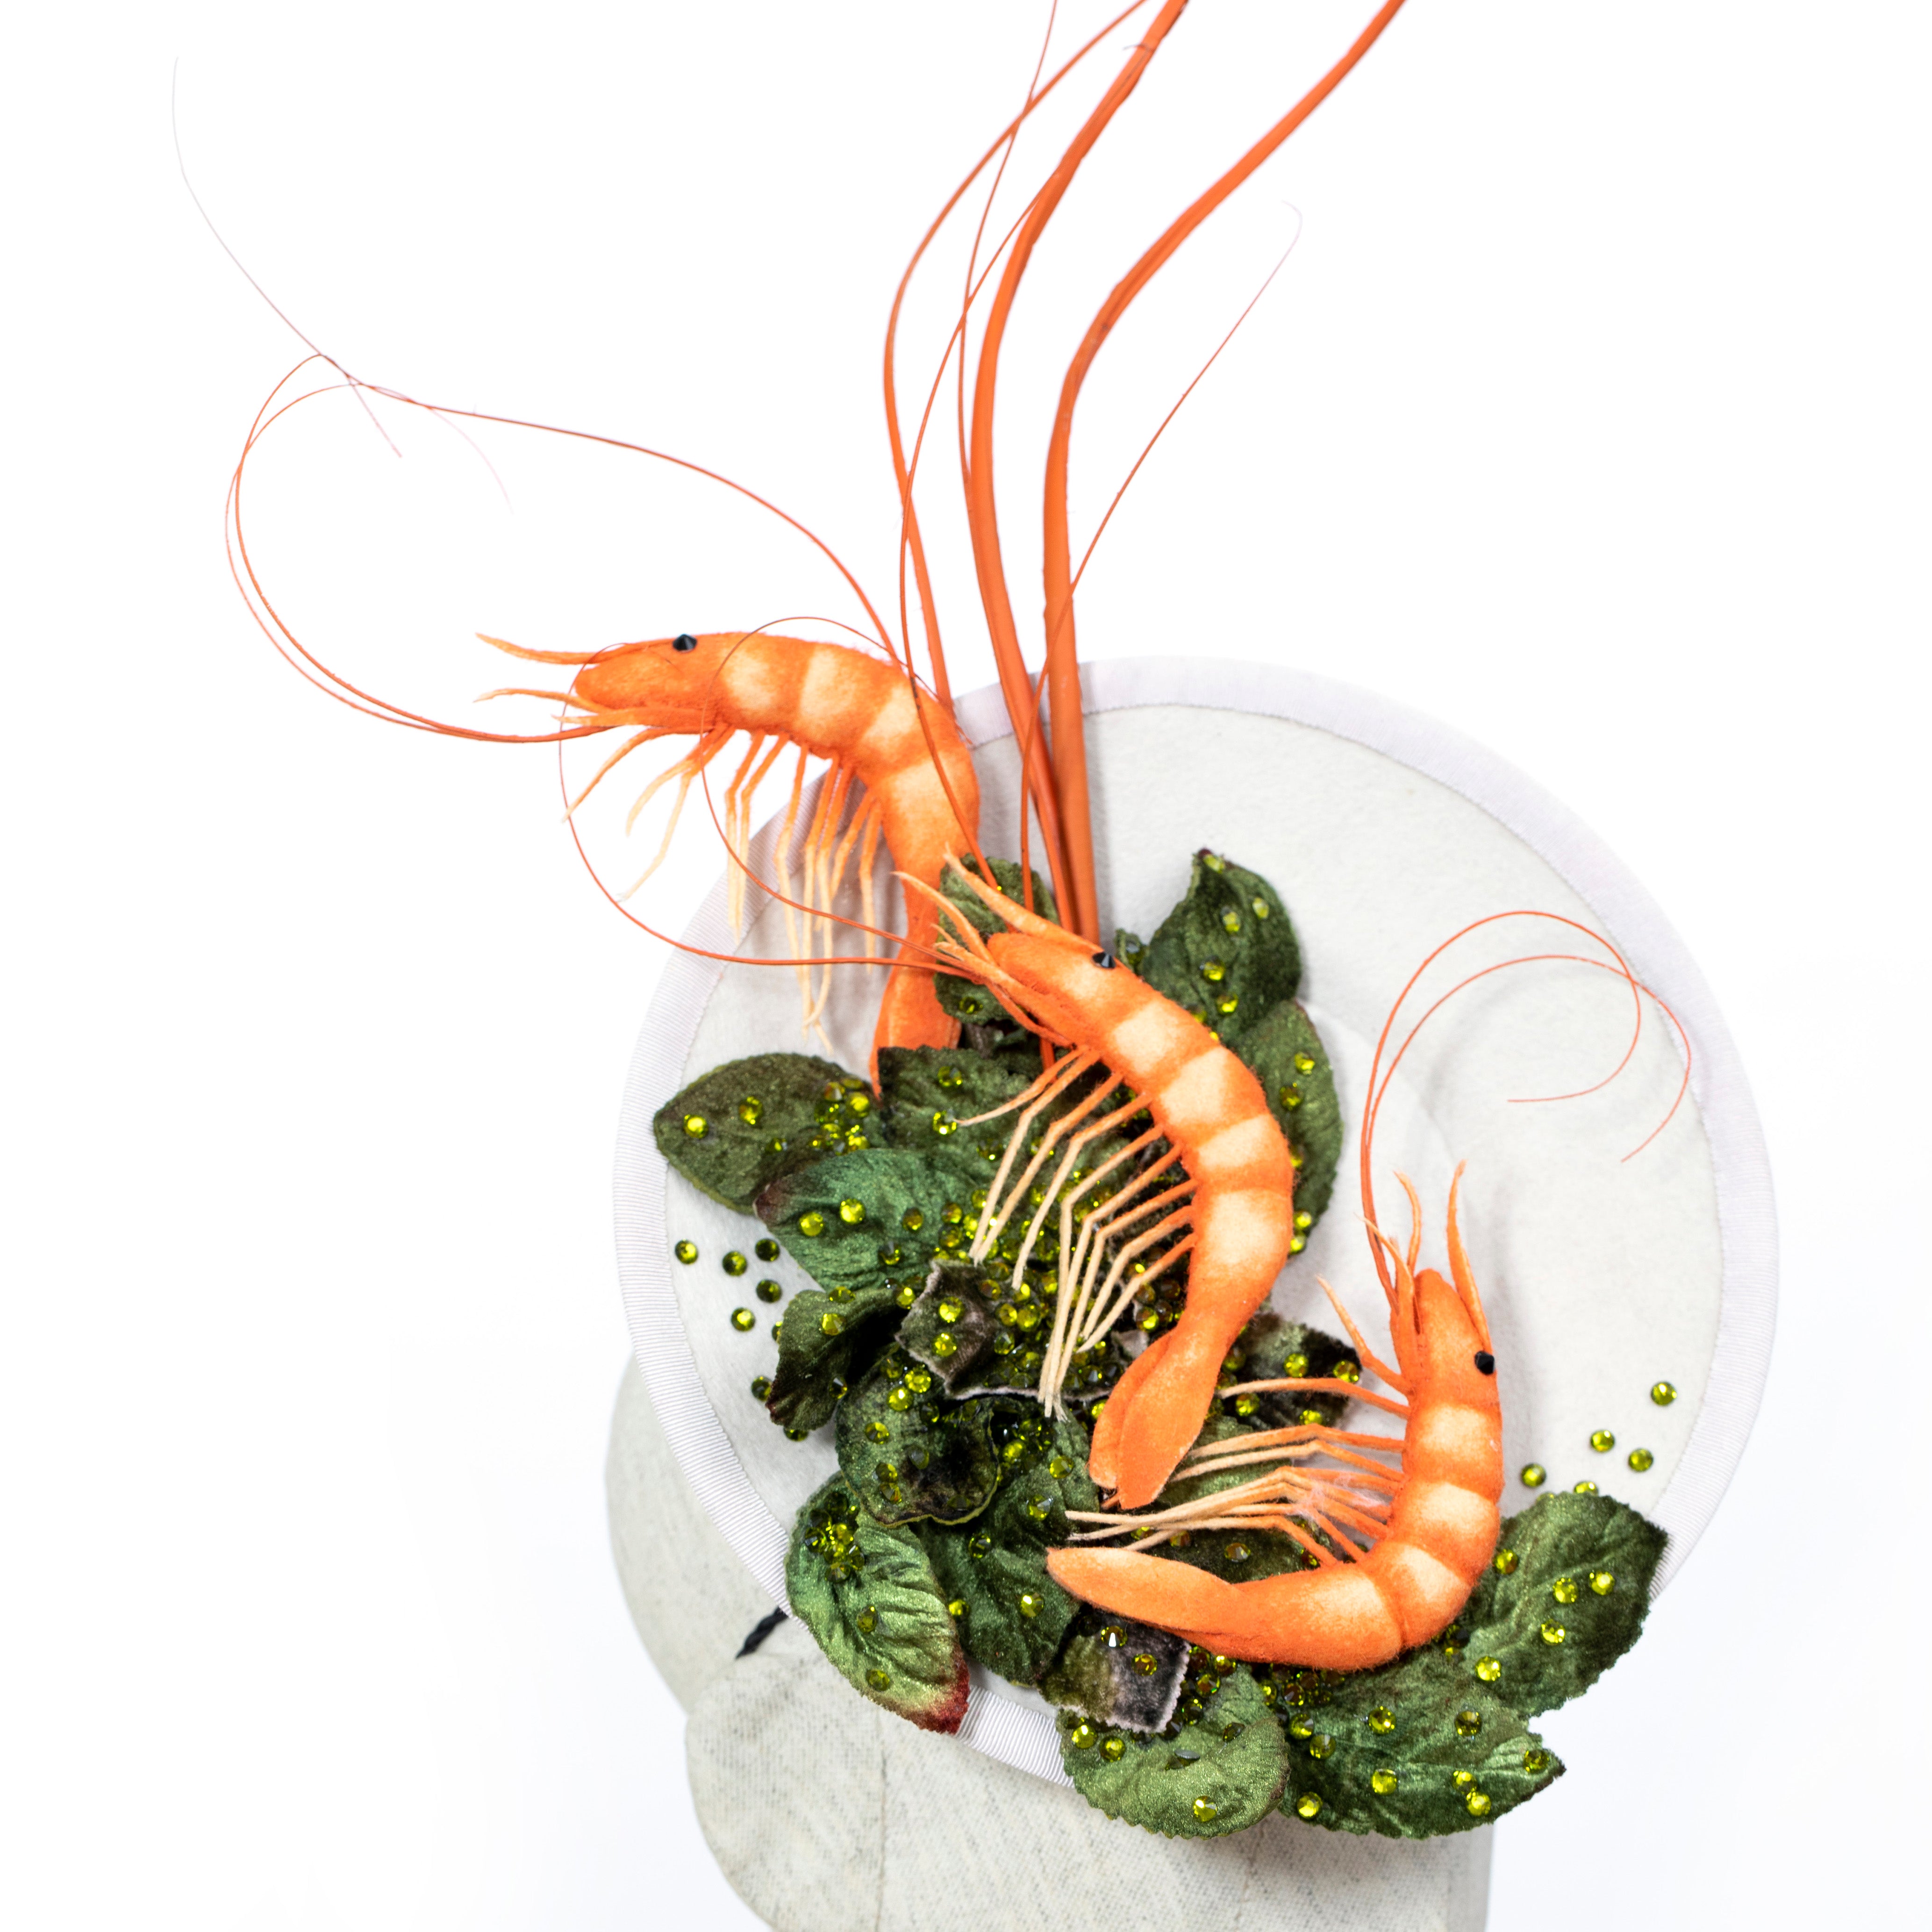 Jumbo shrimp on Spinach